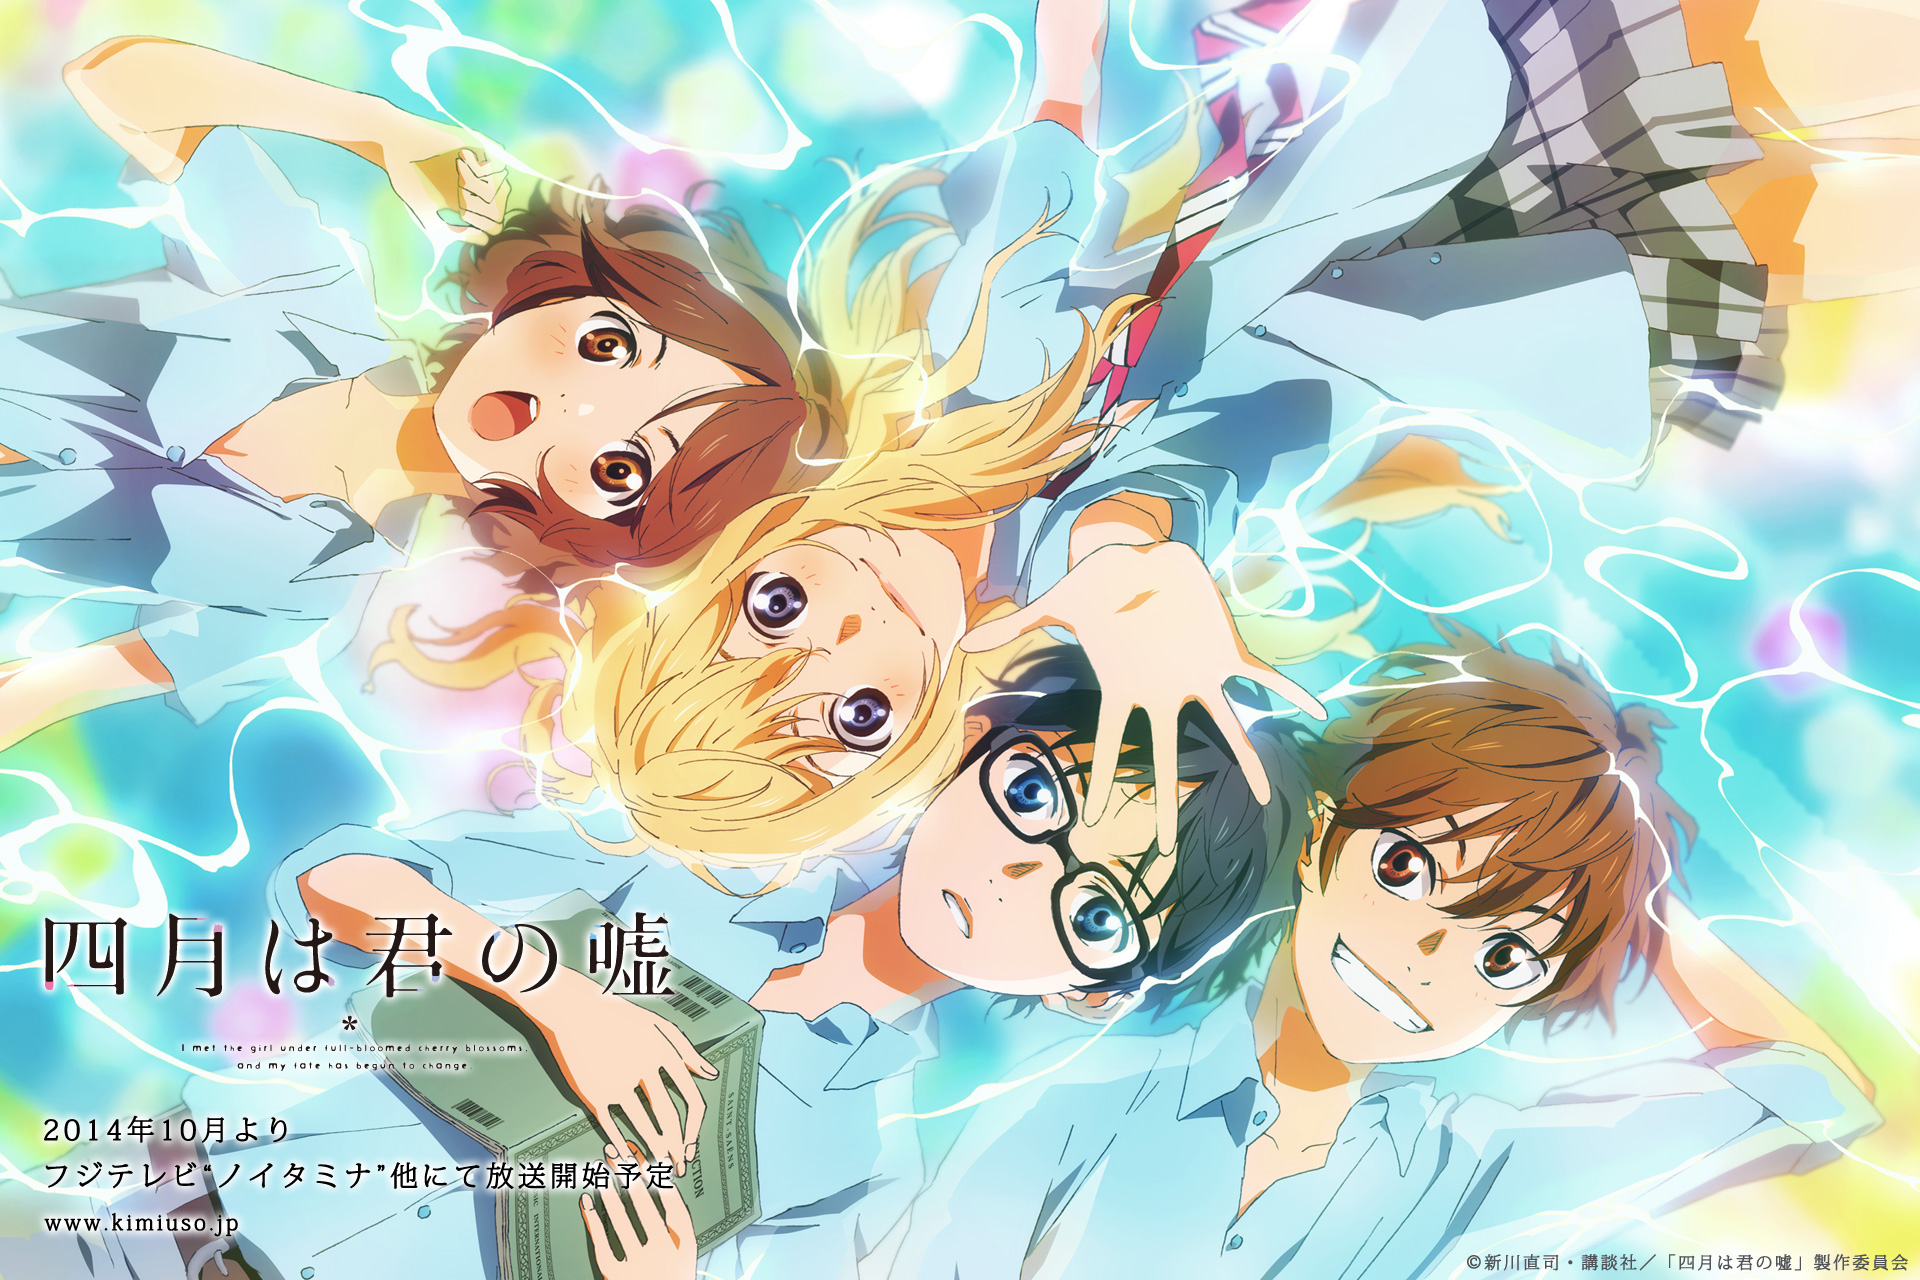 Anime Review: Shigatsu wa Kimi no Uso